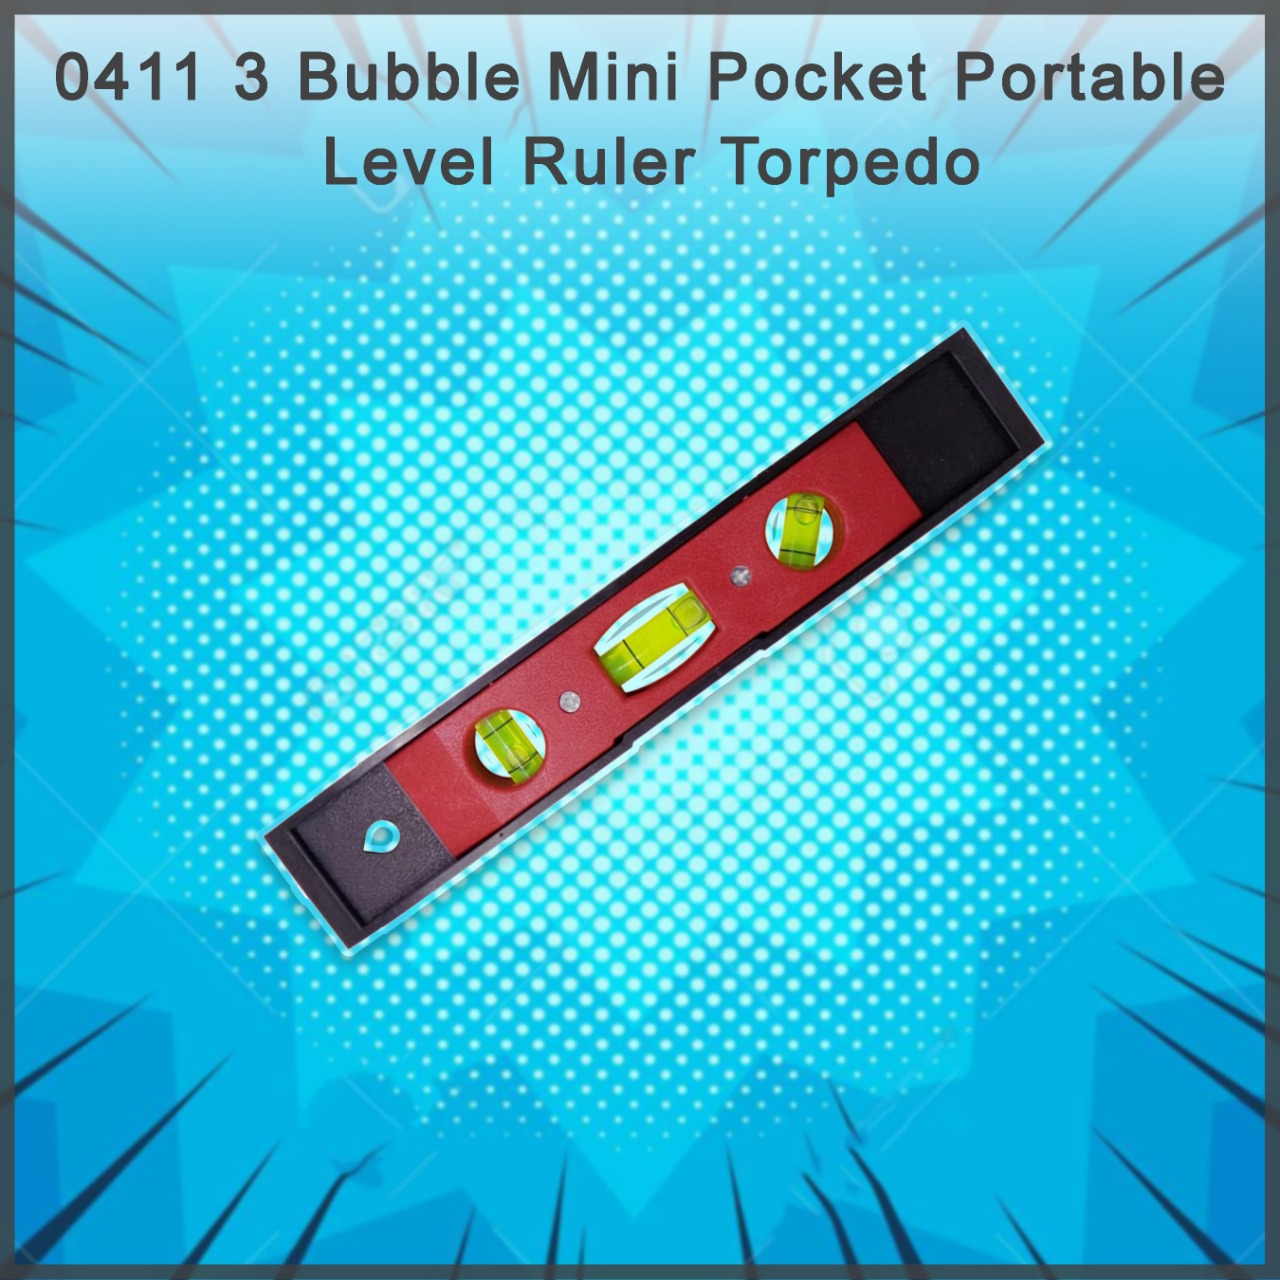 3 Bubble Mini Pocket Portable Level Ruler Torpedo